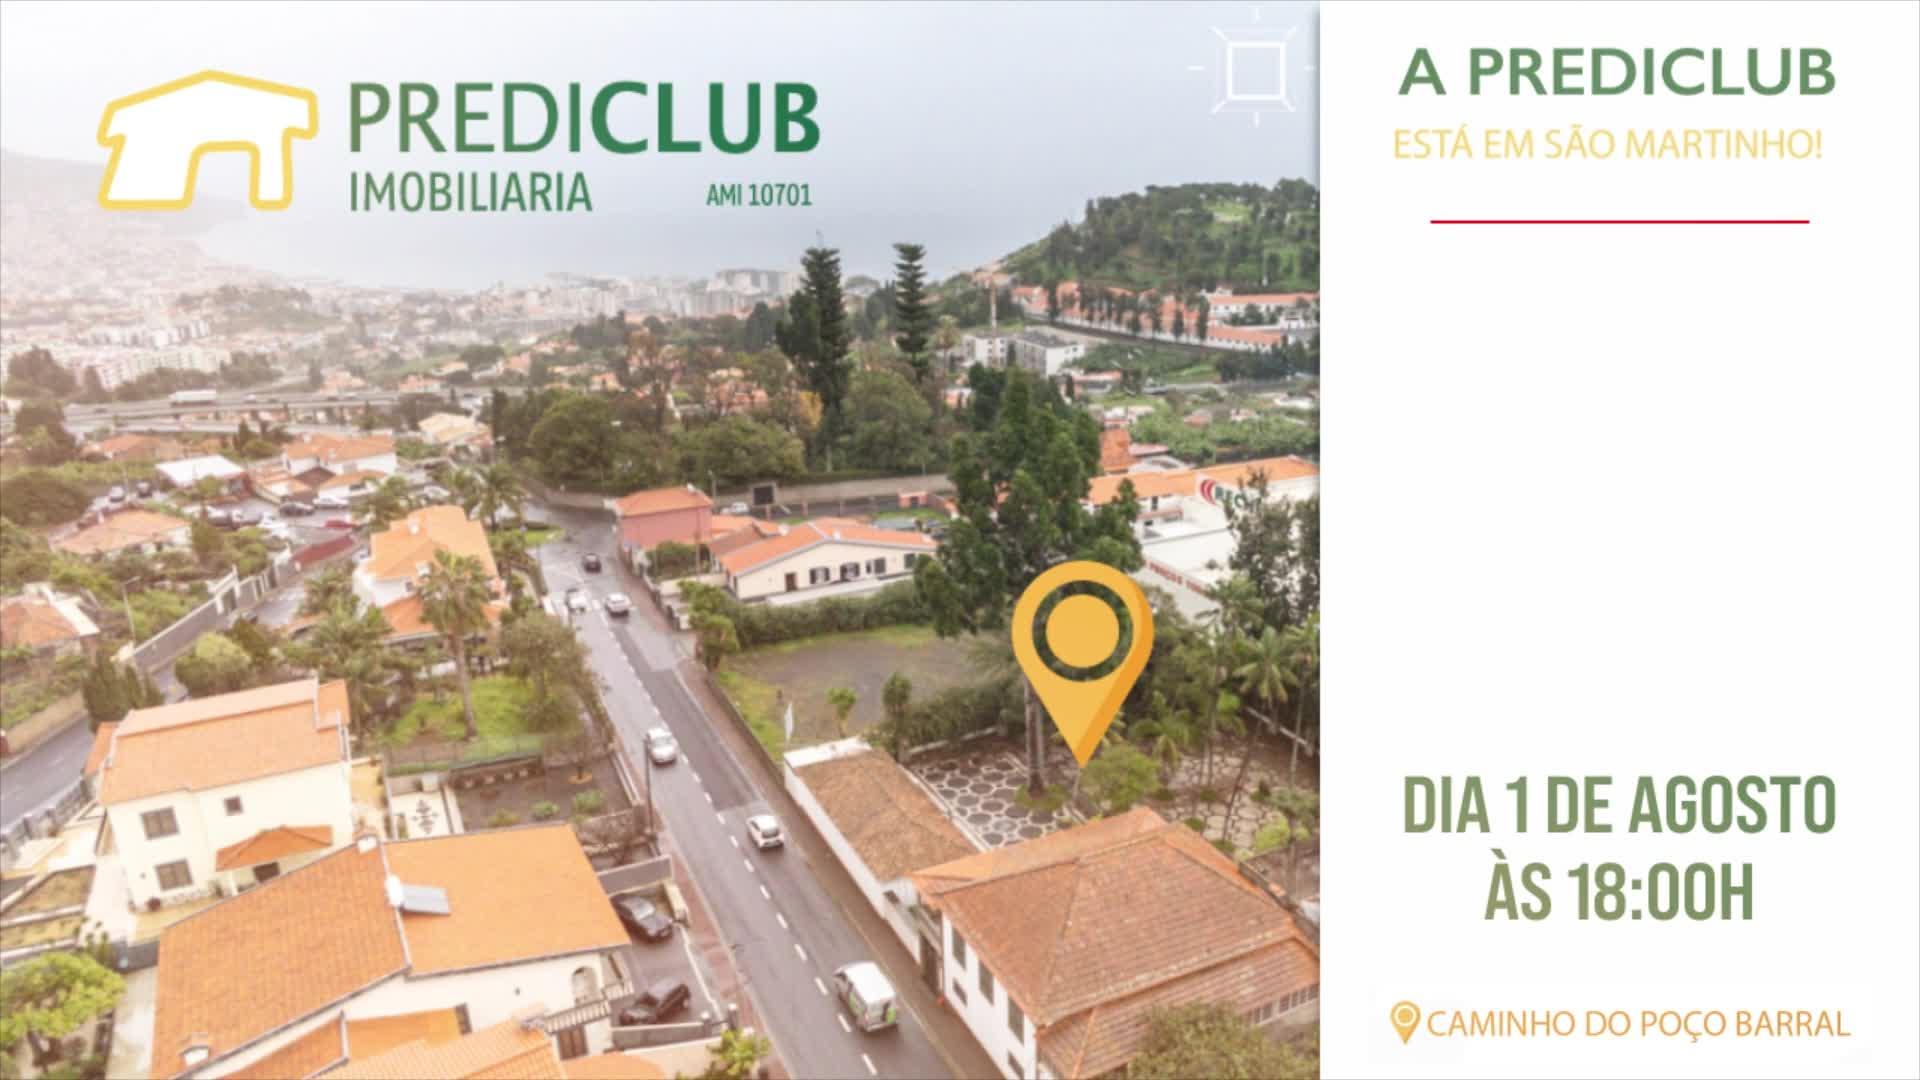 PROMO - PREDICLUB - Nova loja Quinta Prediclub Funchal 